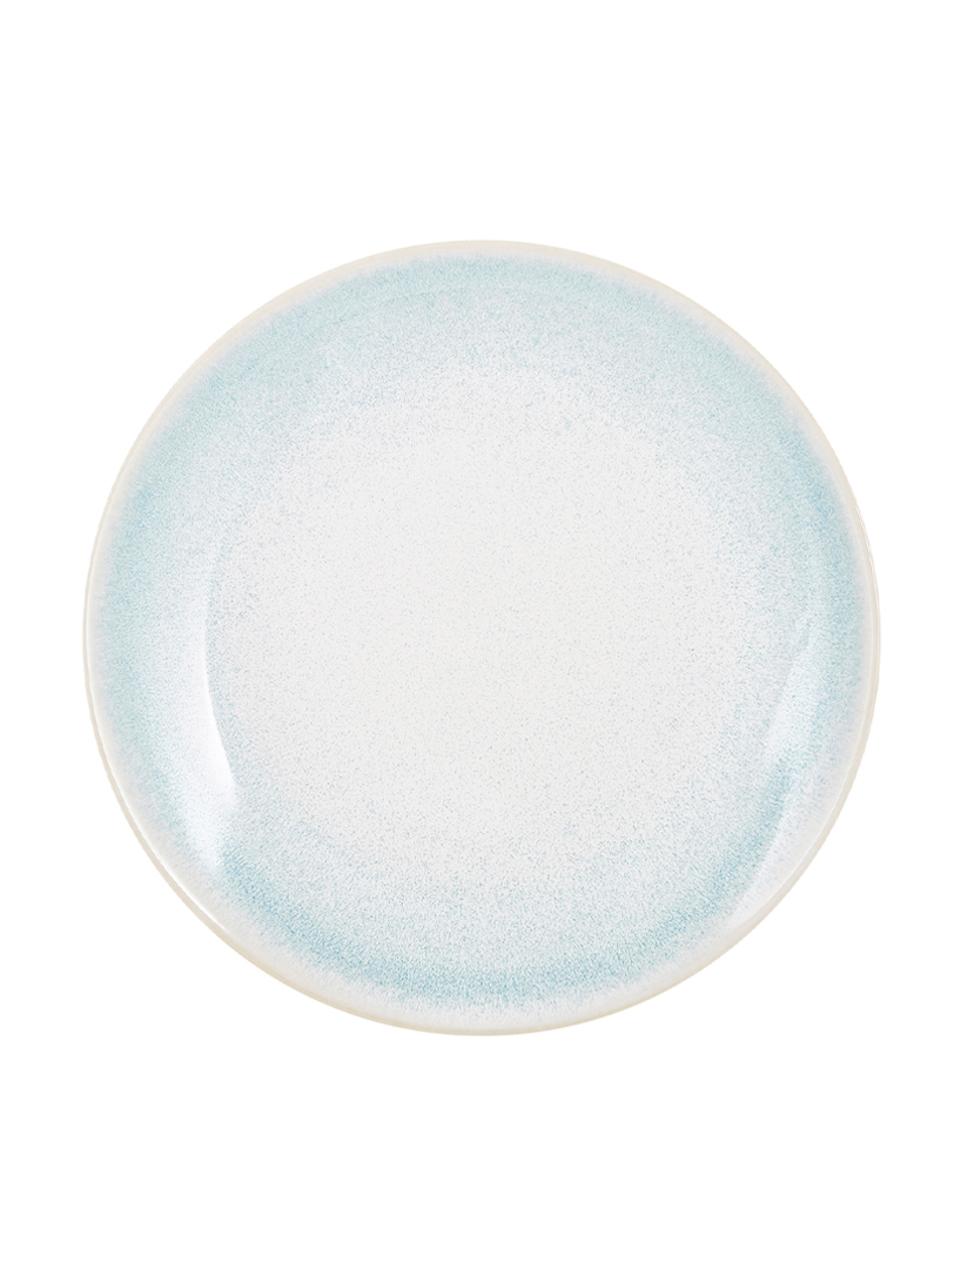 Assiettes à dessert en porcelaine Amalia, 2 pièces, Porcelaine, Bleu ciel, blanc crème, Ø 20 cm